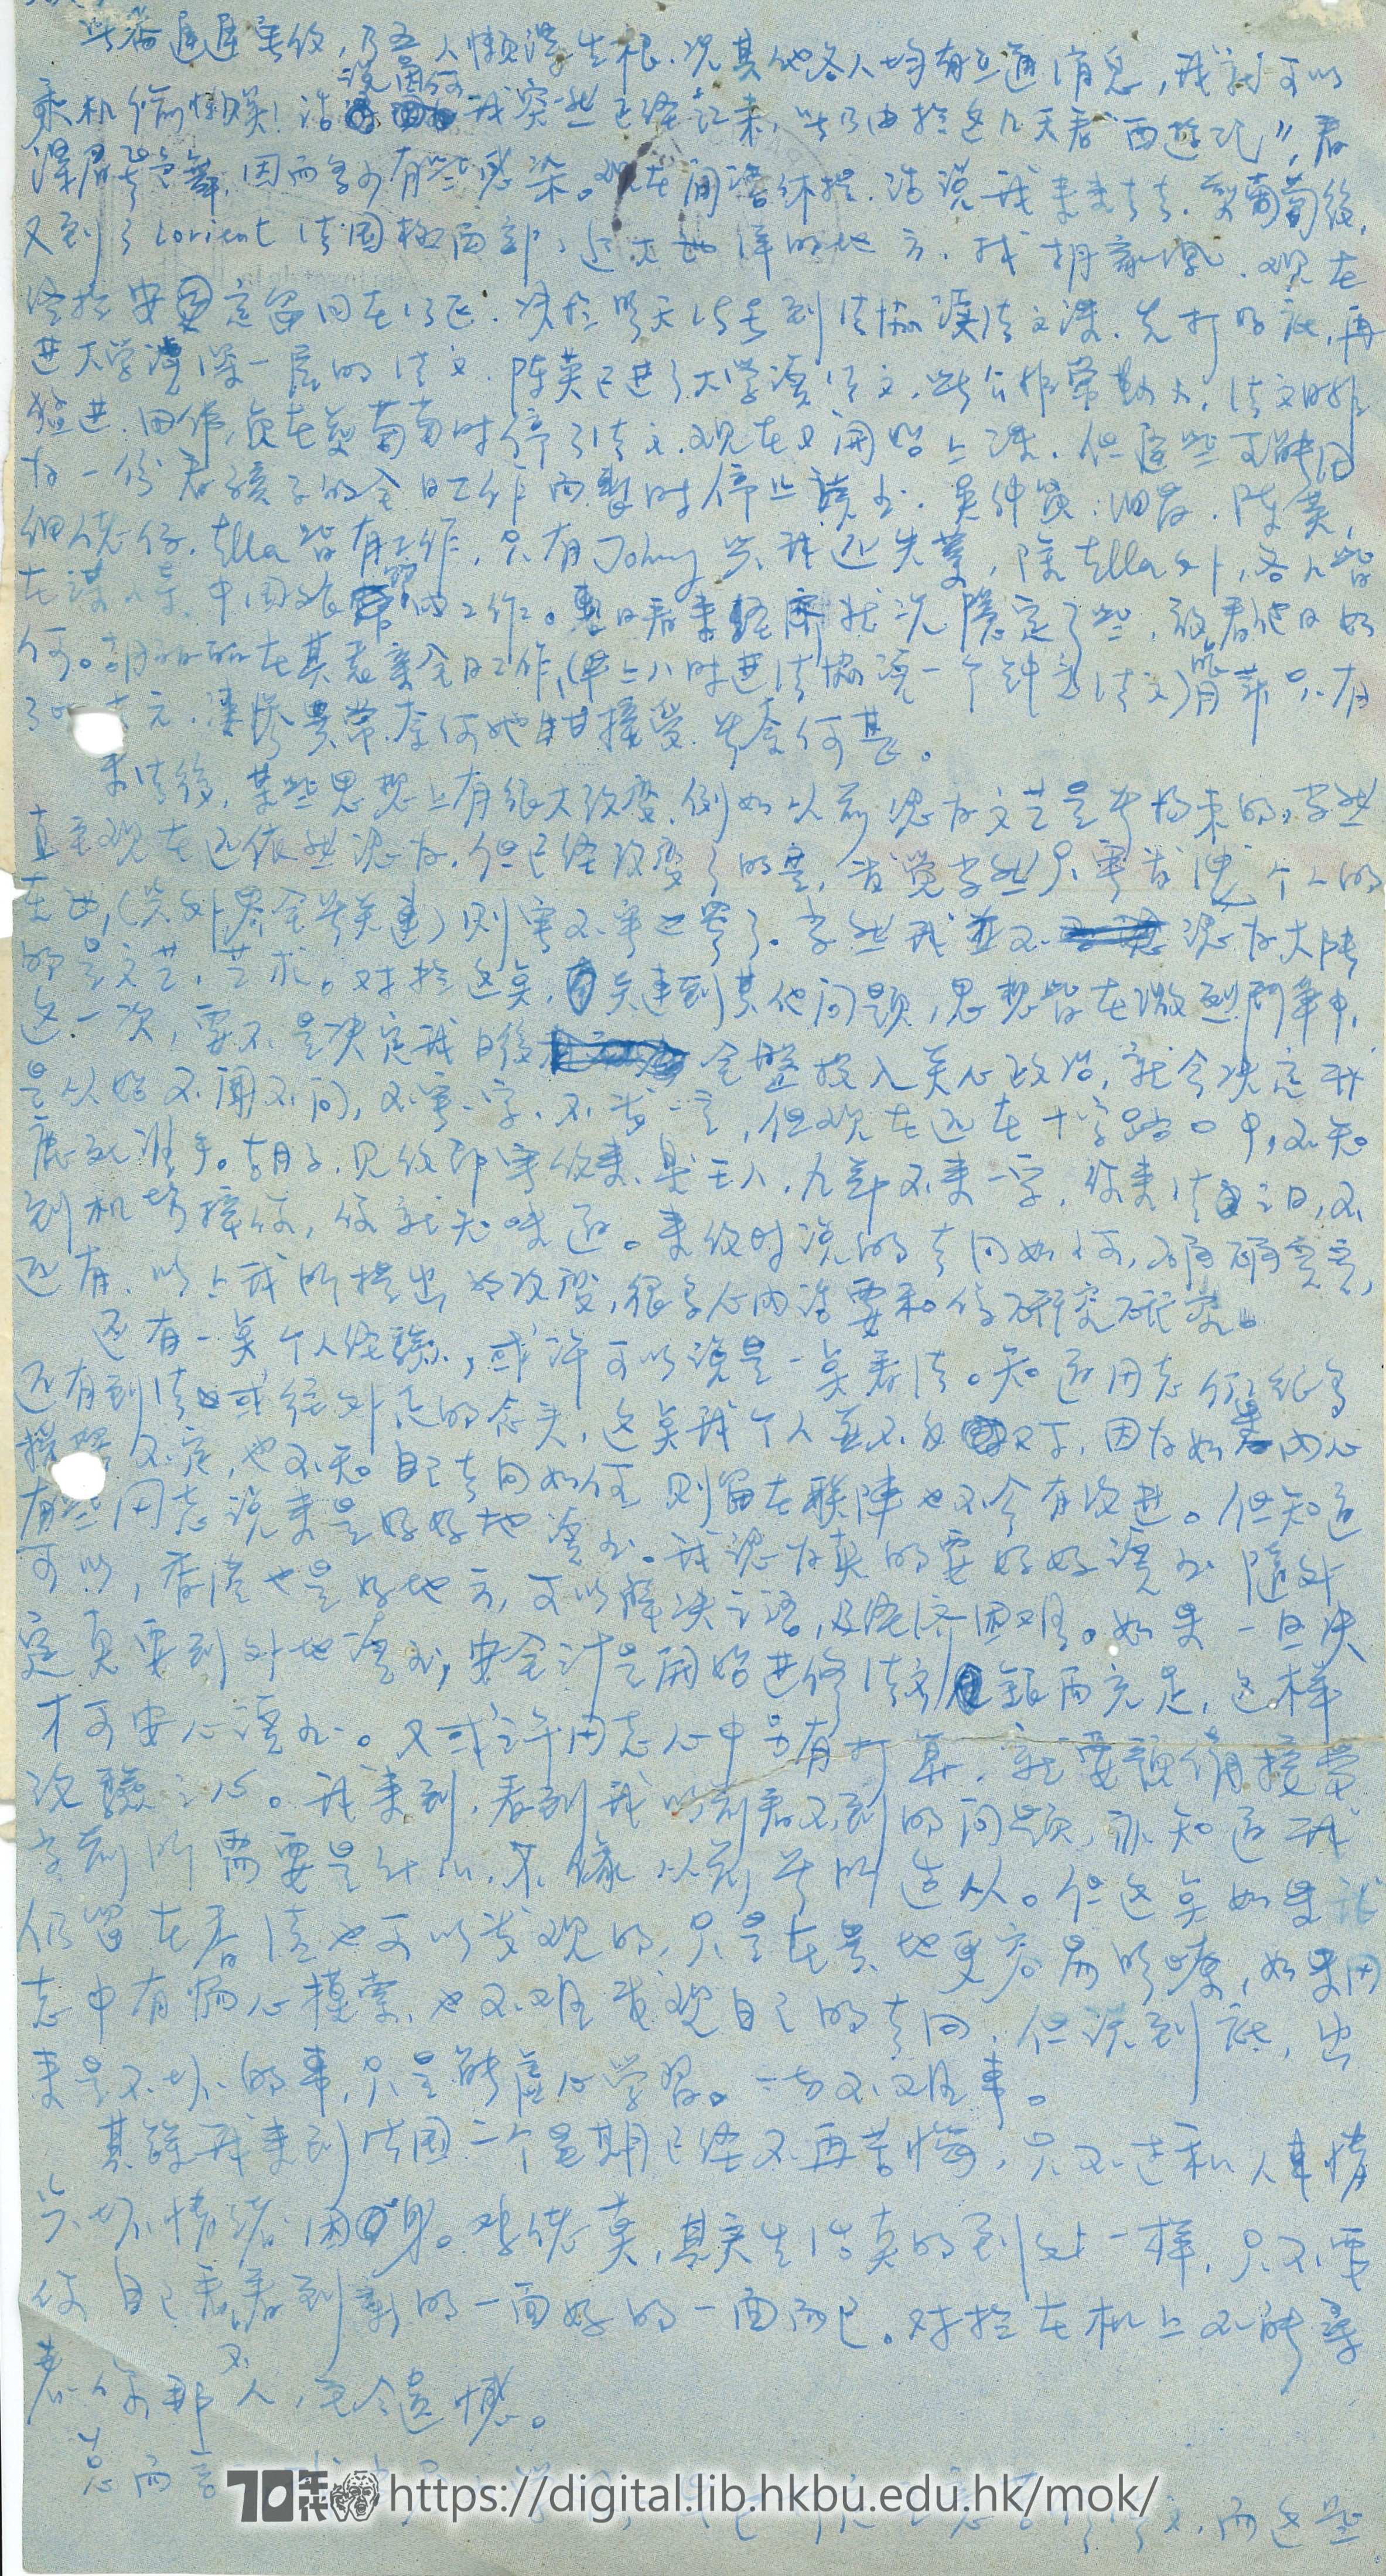   Letter From Li Kam Fung to Mok Chiu Yu  